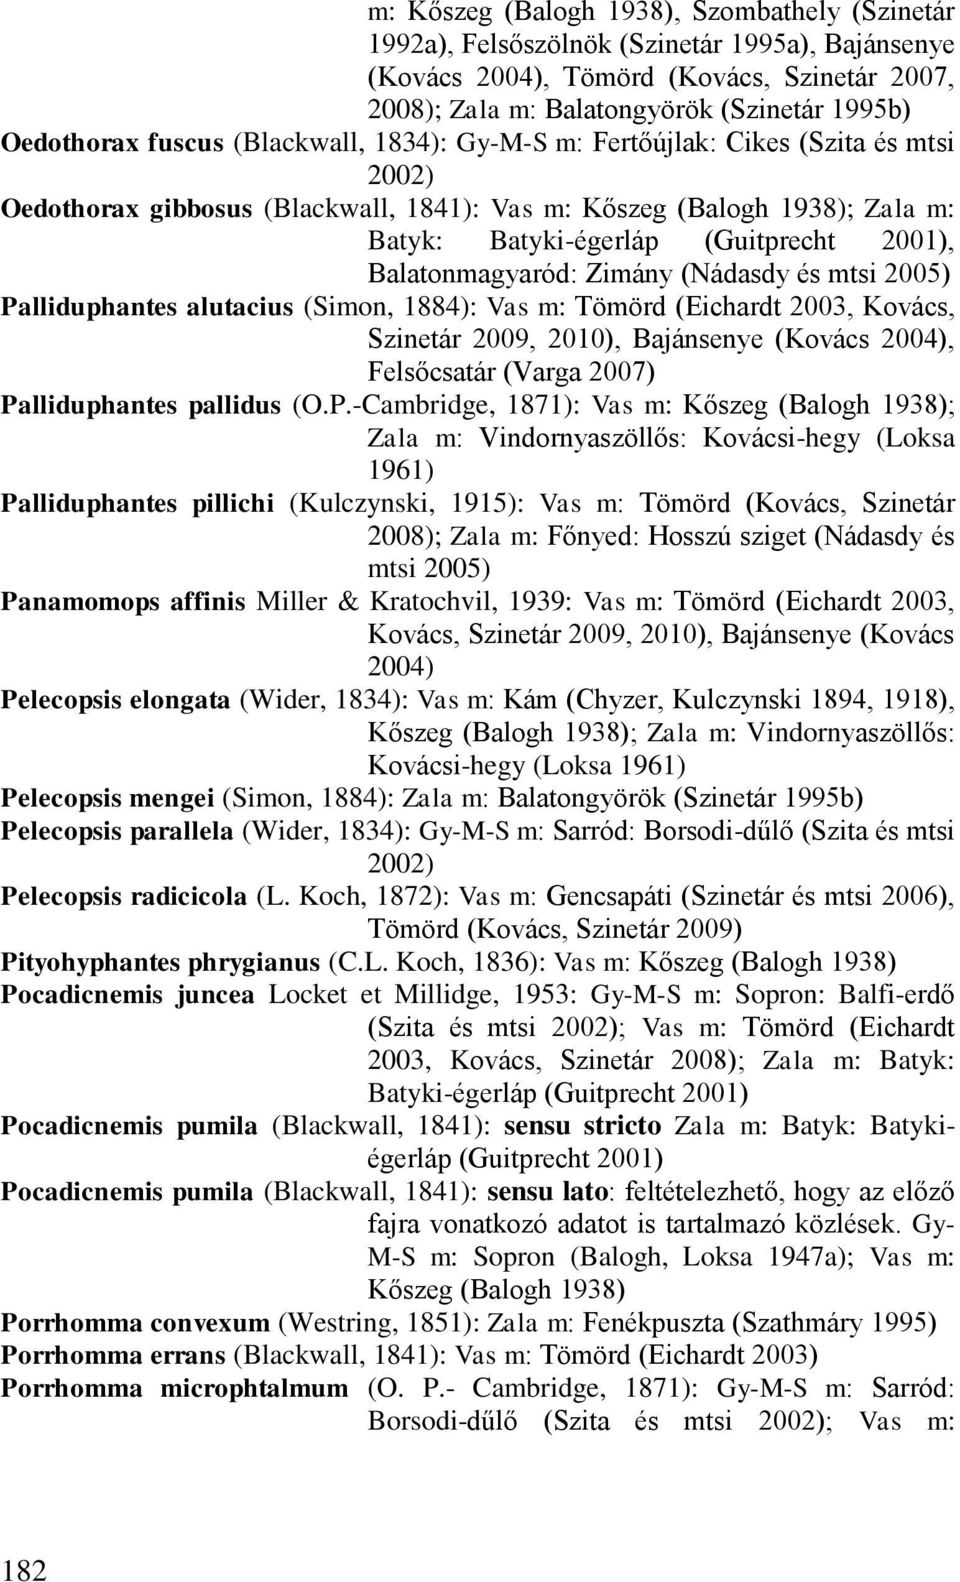 Balatonmagyaród: Zimány (Nádasdy és mtsi 2005) Palliduphantes alutacius (Simon, 1884): Vas m: Tömörd (Eichardt 2003, Kovács, Szinetár 2009, 2010), Bajánsenye (Kovács 2004), Felsőcsatár (Varga 2007)